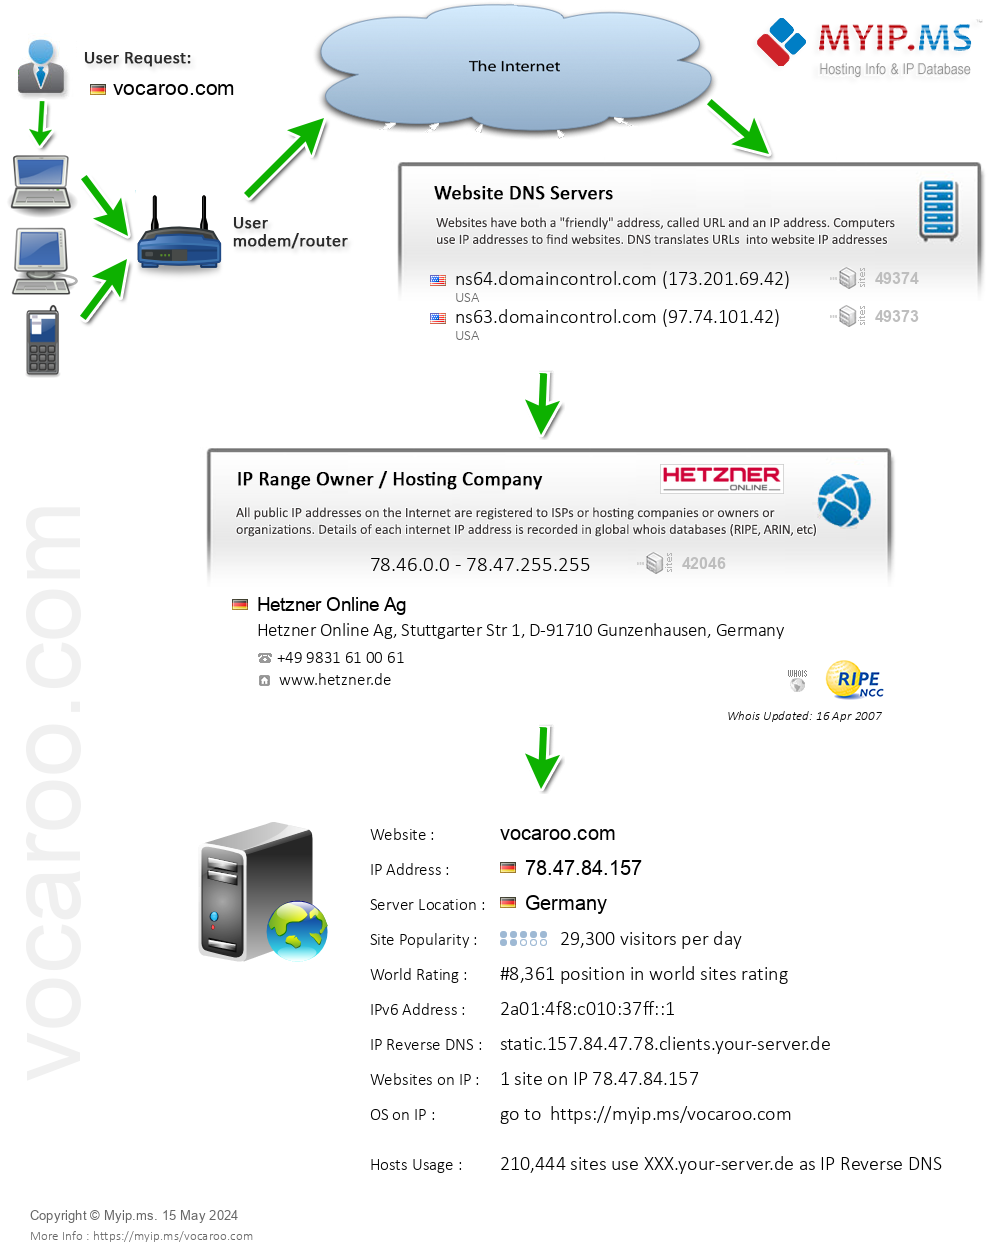 Vocaroo.com - Website Hosting Visual IP Diagram